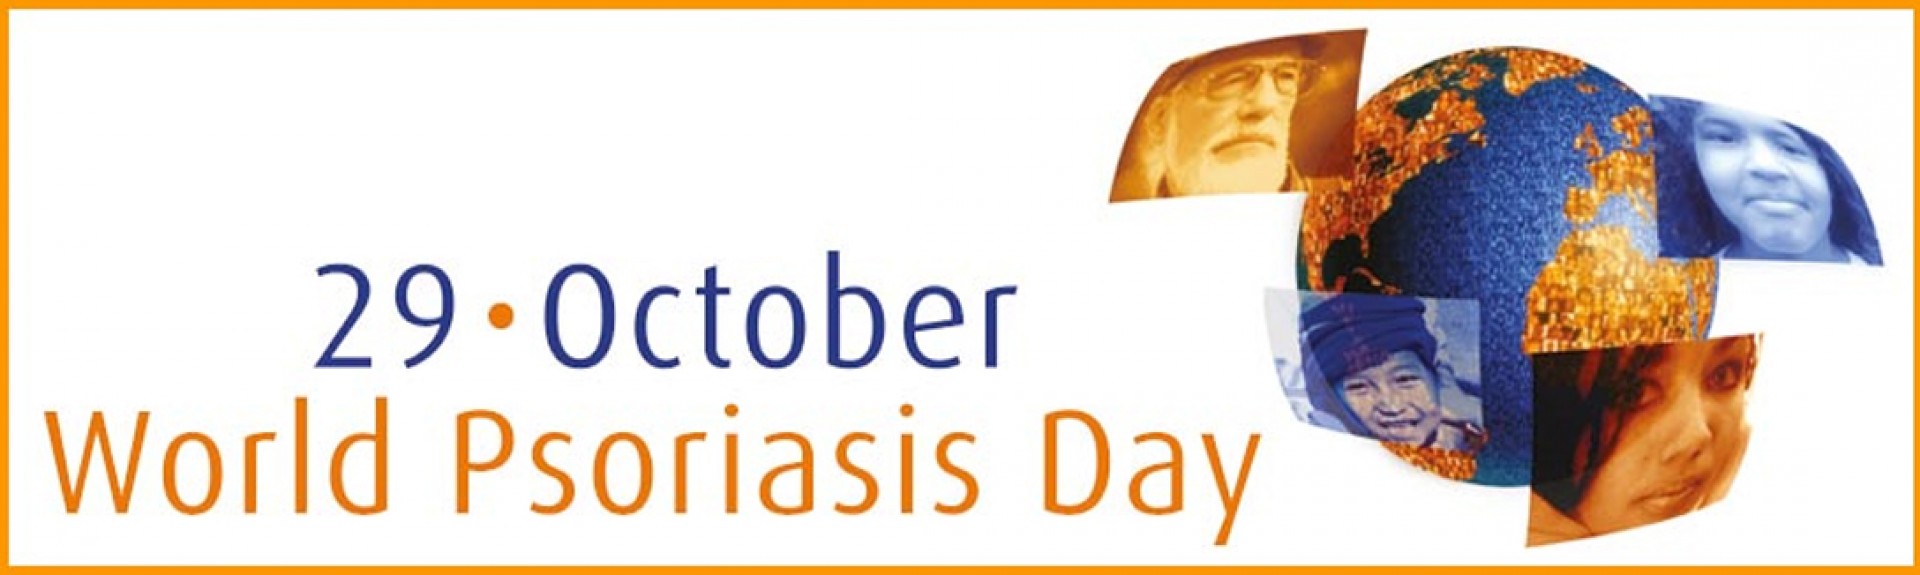 Día Mundial de la Psoriasis 2019